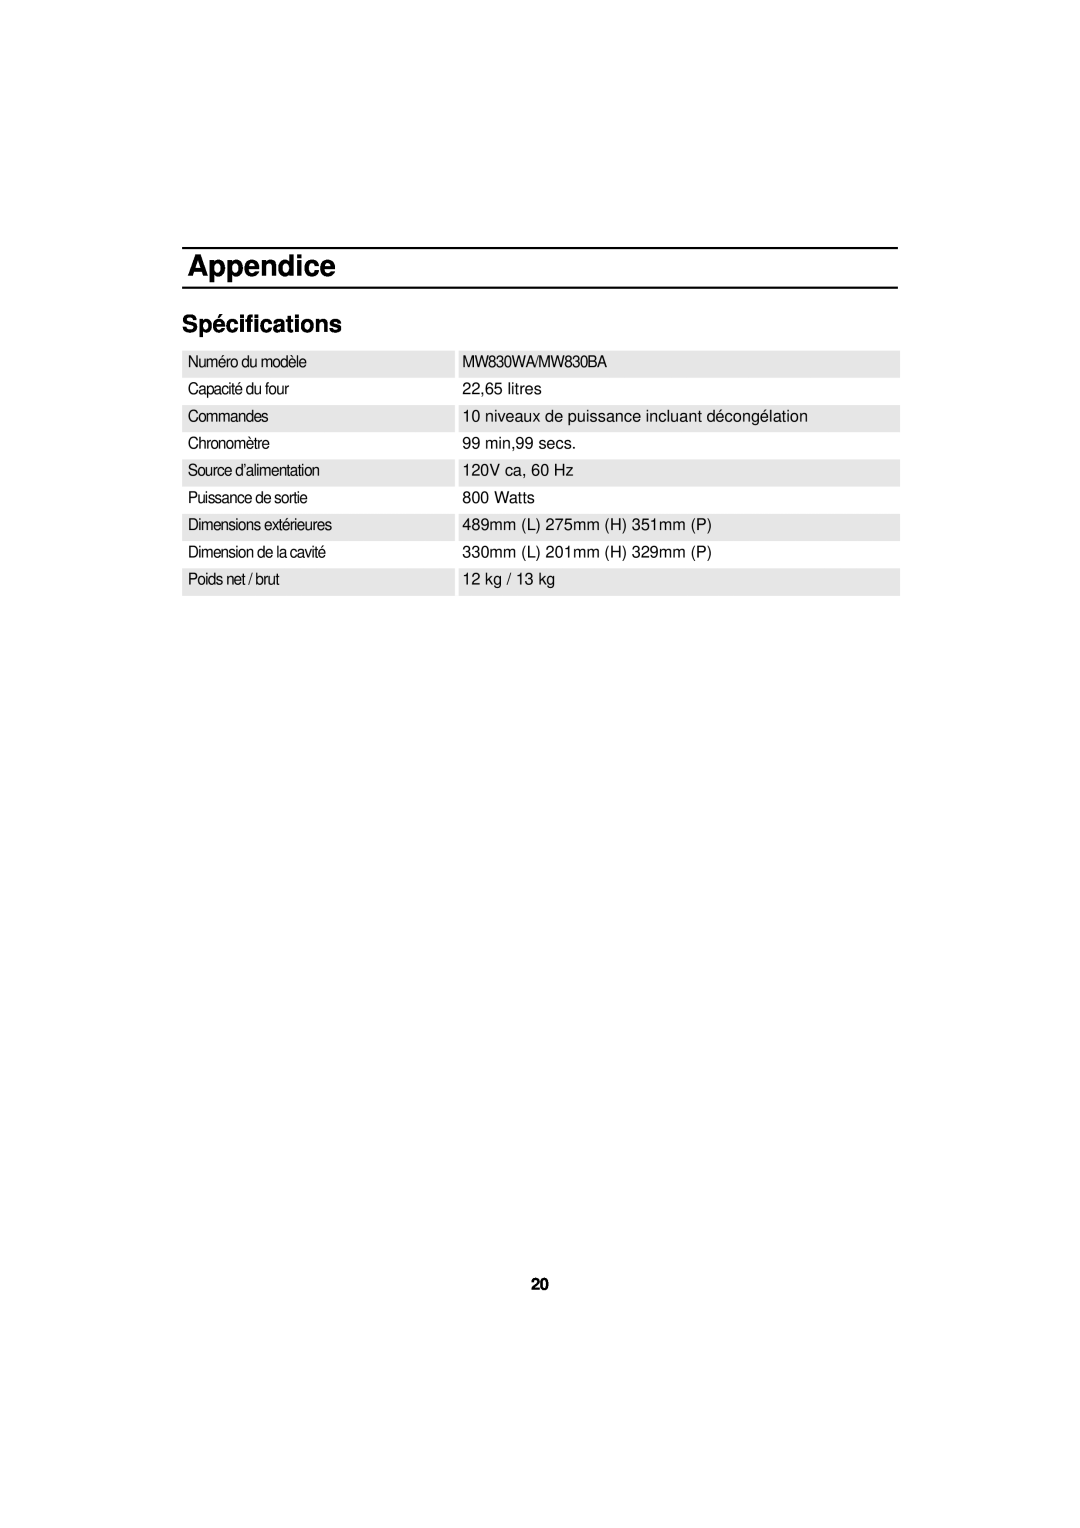 Samsung MW830BA manual Spécifications, Appendice, niveaux de puissance incluant décongélation 99 min,99 secs, 12 kg / 13 kg 